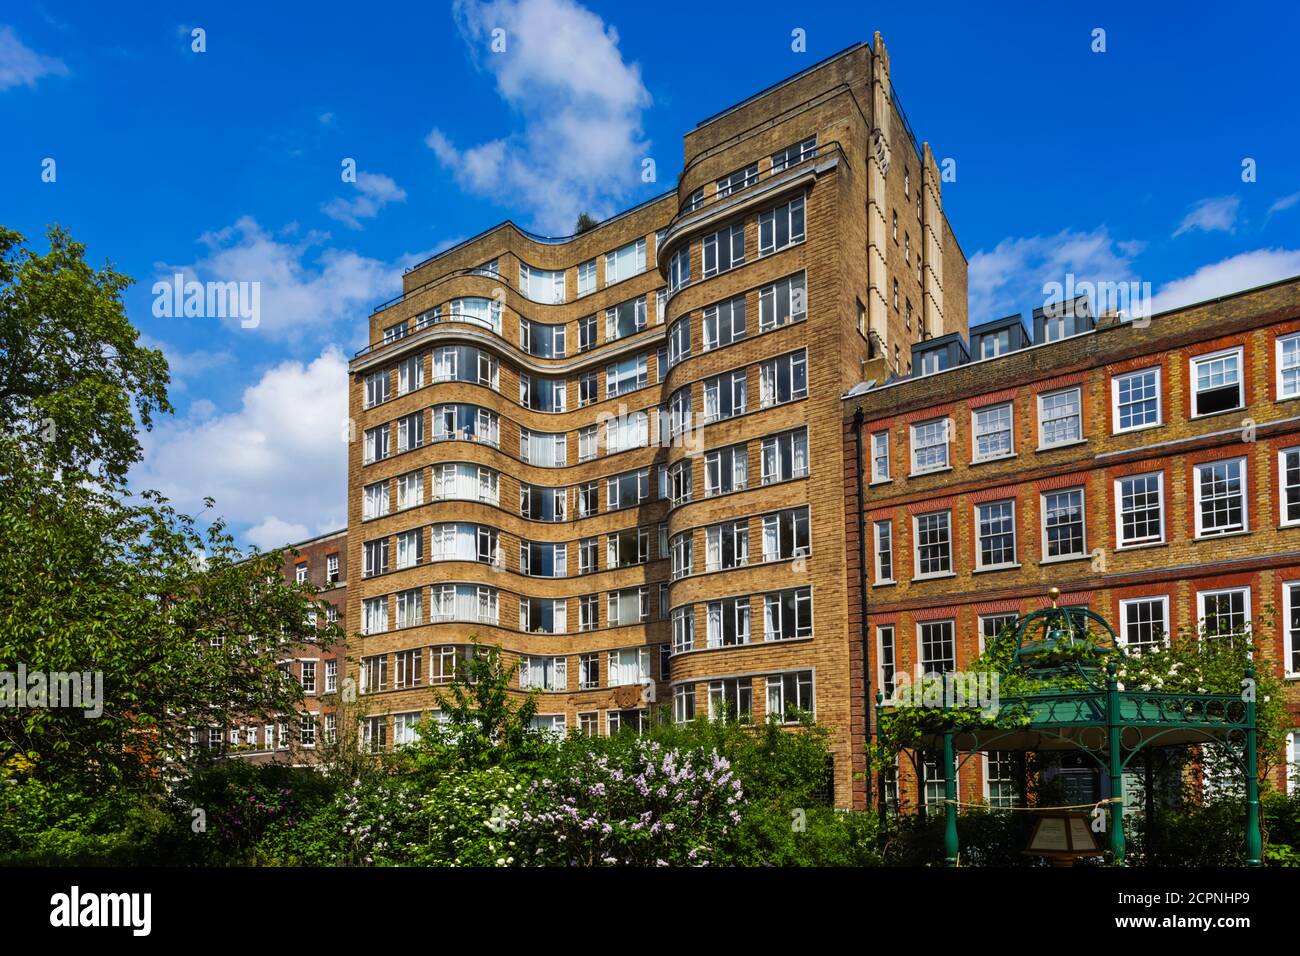 Inghilterra, Londra, Città di Londra, Smithfield, Charterhouse Square, Florin Court Art Deco edificio residenziale alias Whitehaven Mansion nella TV Poirot Foto Stock